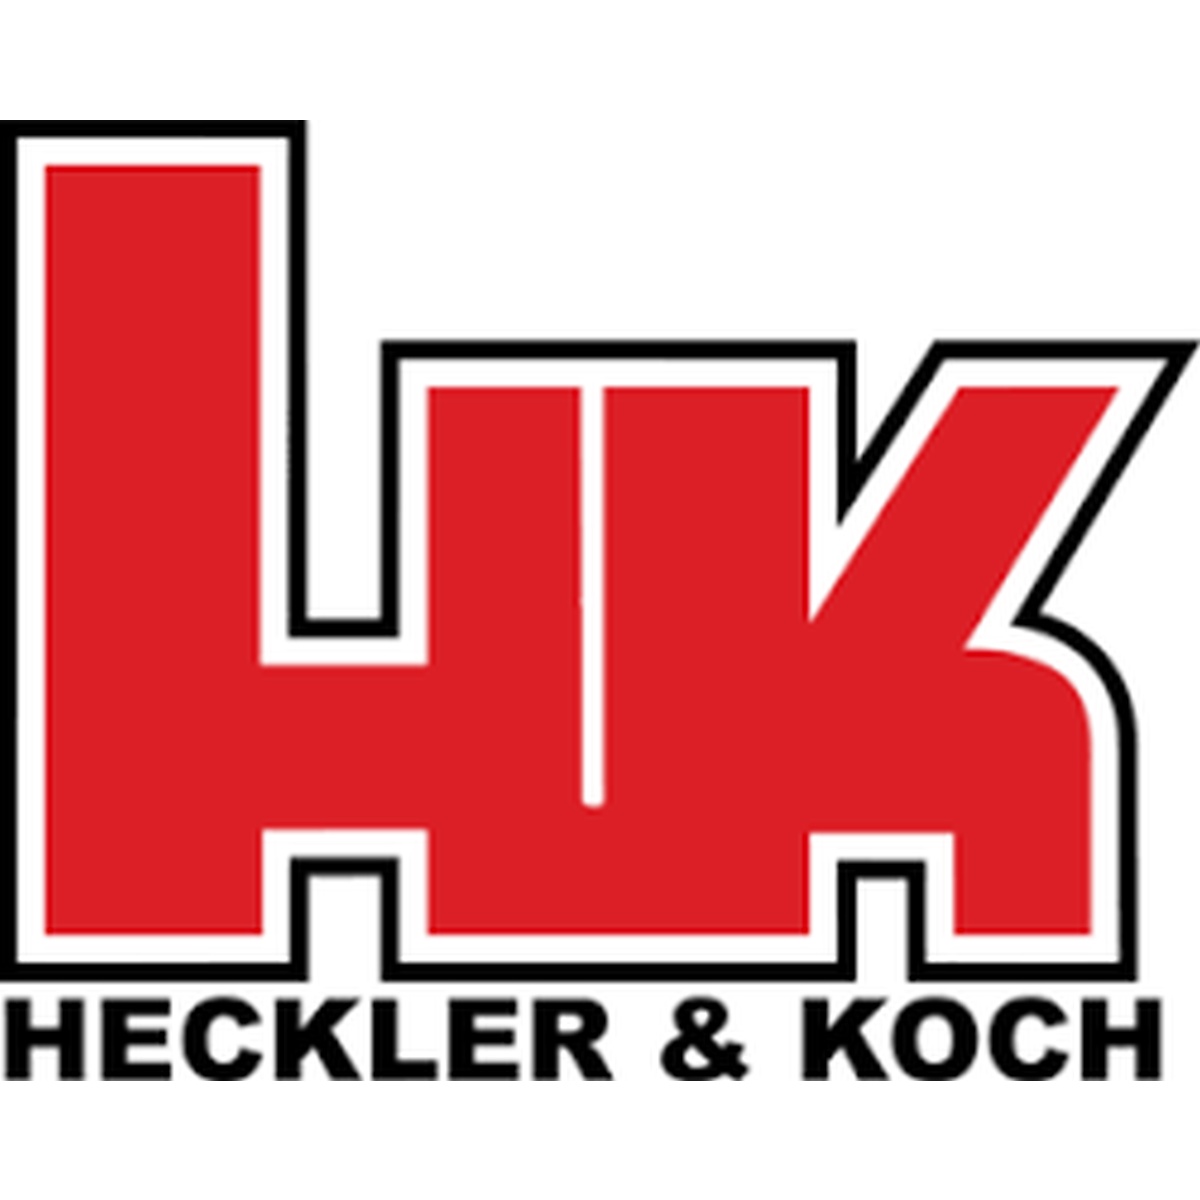 Heckler & koch